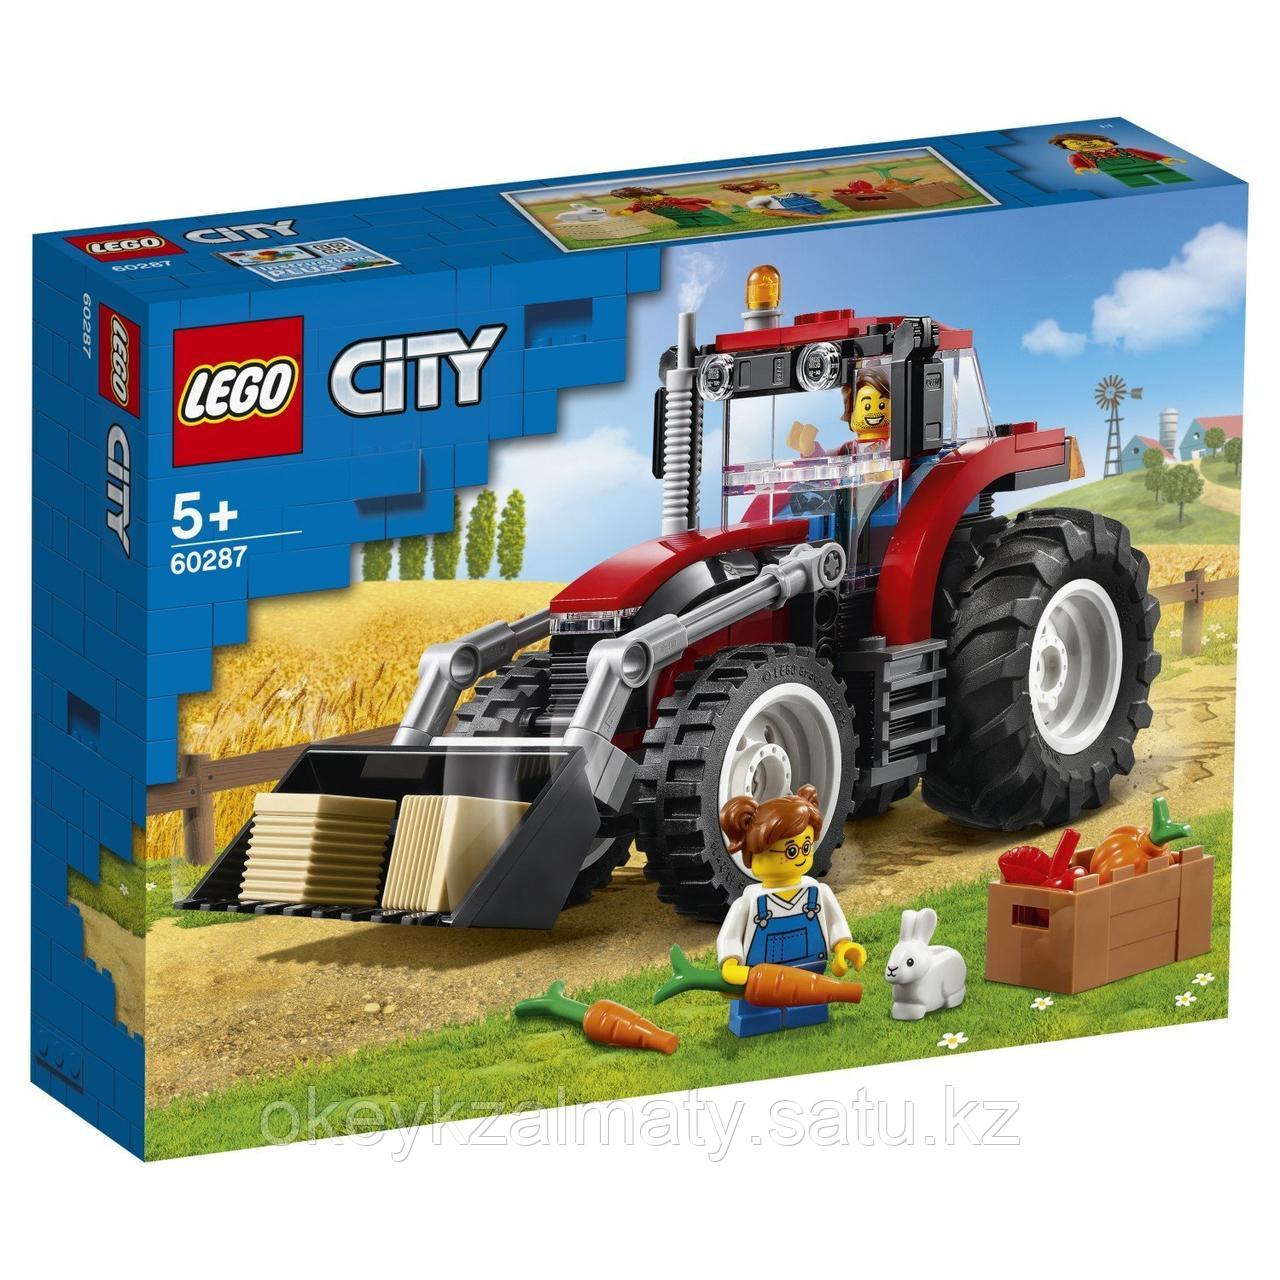 LEGO City: Трактор 60287